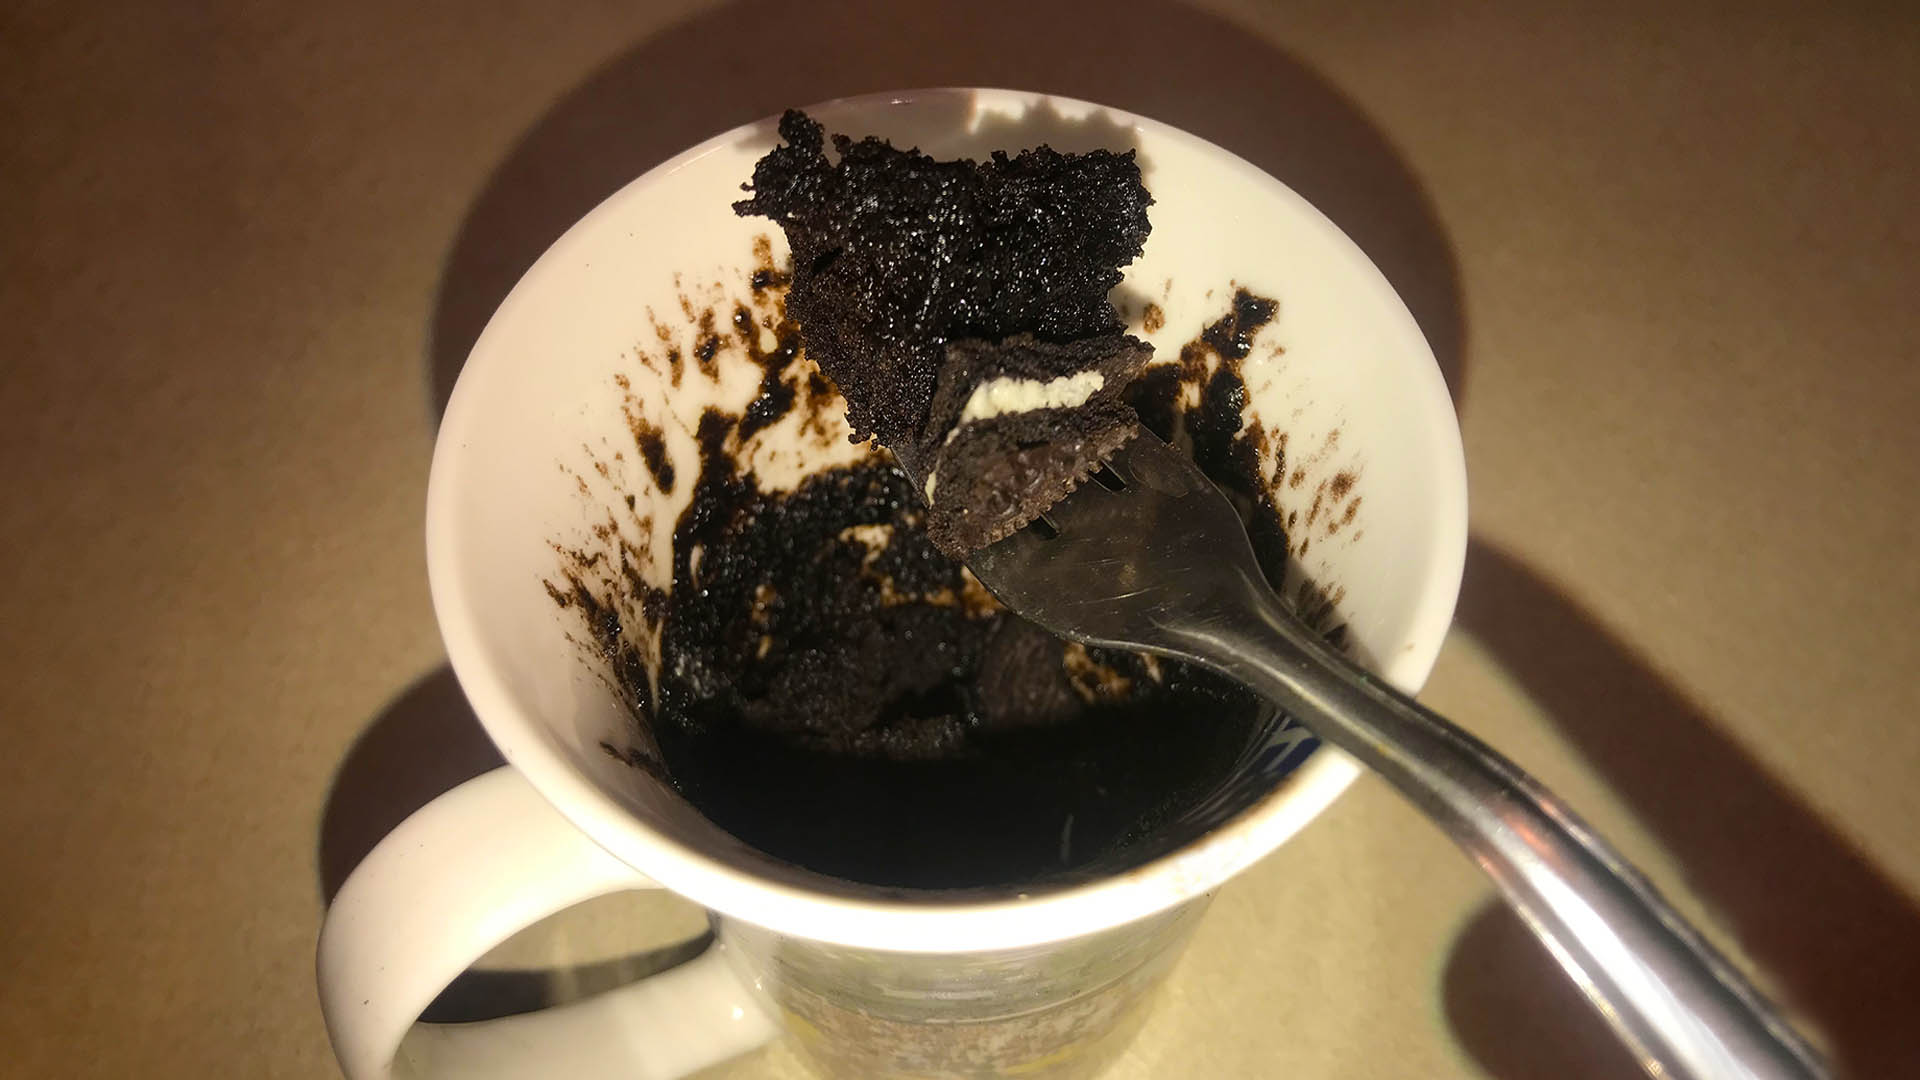 Mikrós oreo keksz süti 4 összetevőből című recept ételfotója